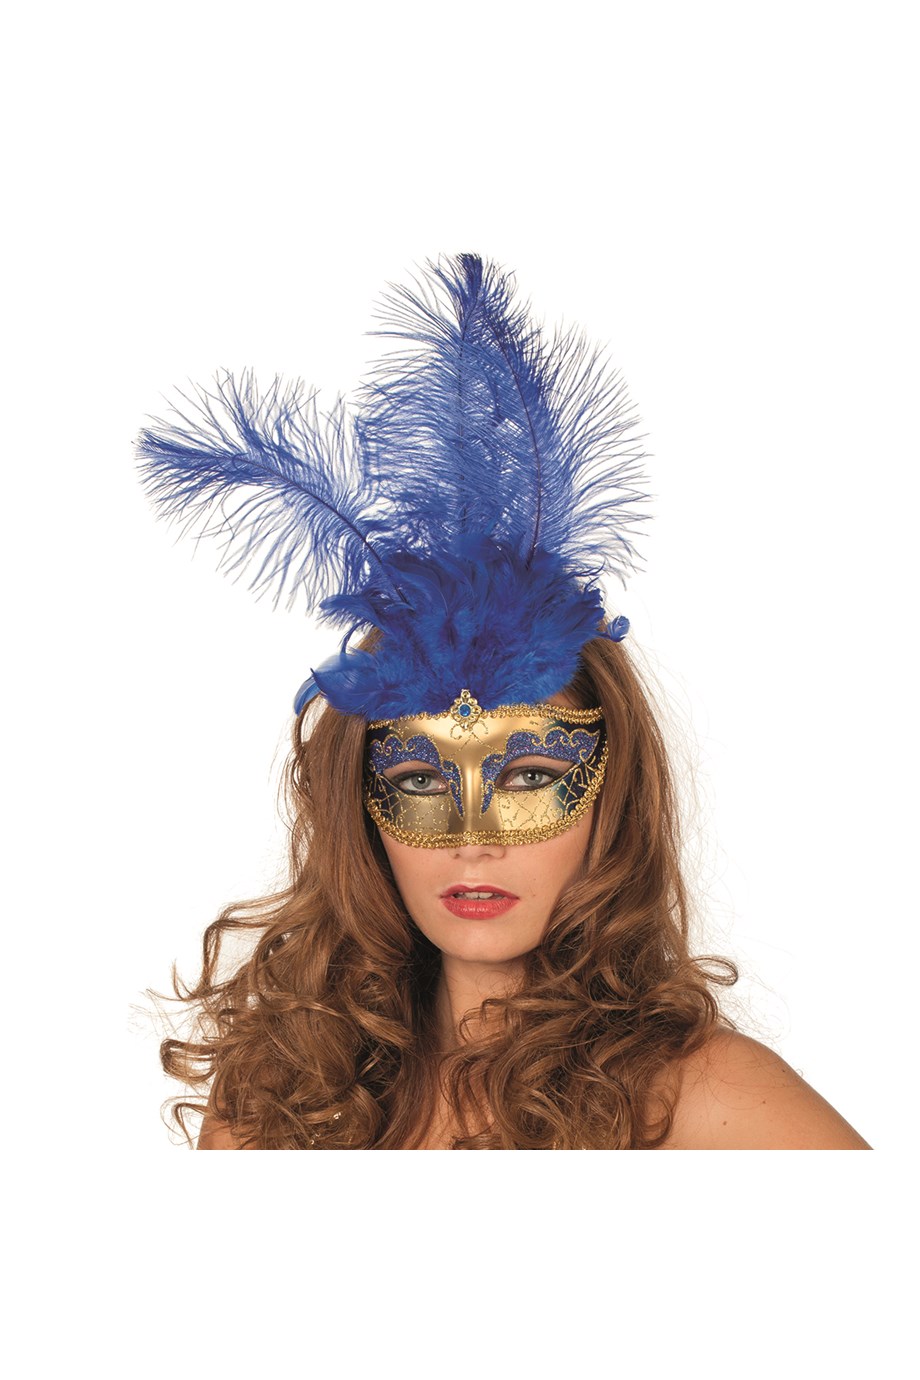 verkoop - attributen - Nieuwjaar - Venetiaans masker blauw met grote pluimen